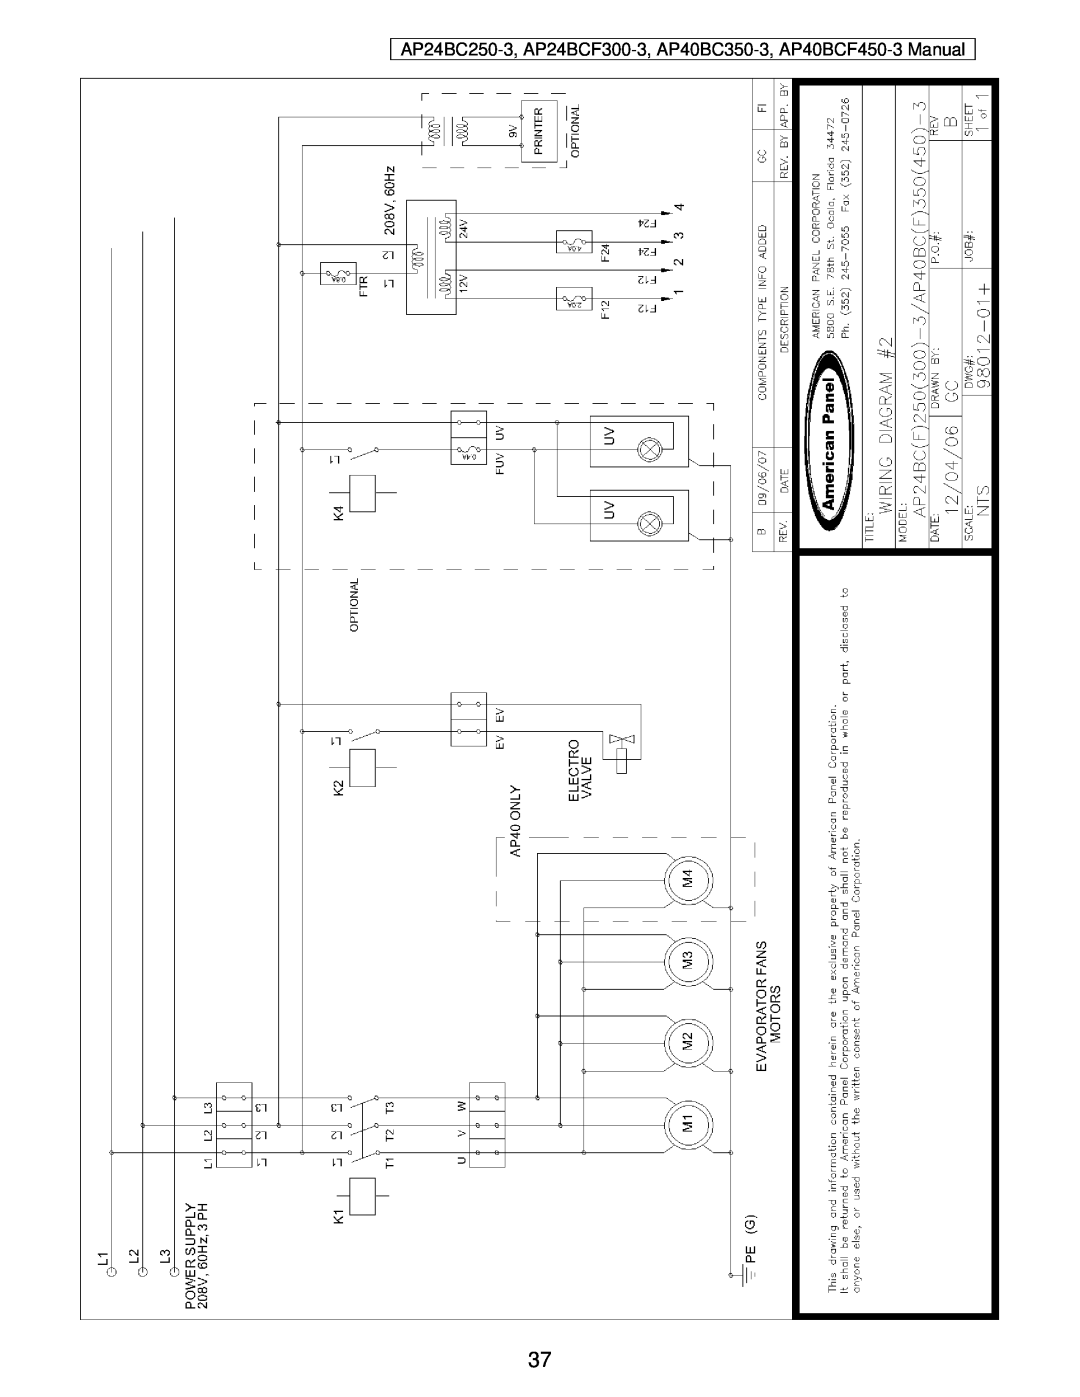 American Panel user manual AP24BC250-3, AP24BCF300-3, AP40BC350-3, AP40BCF450-3 Manual 